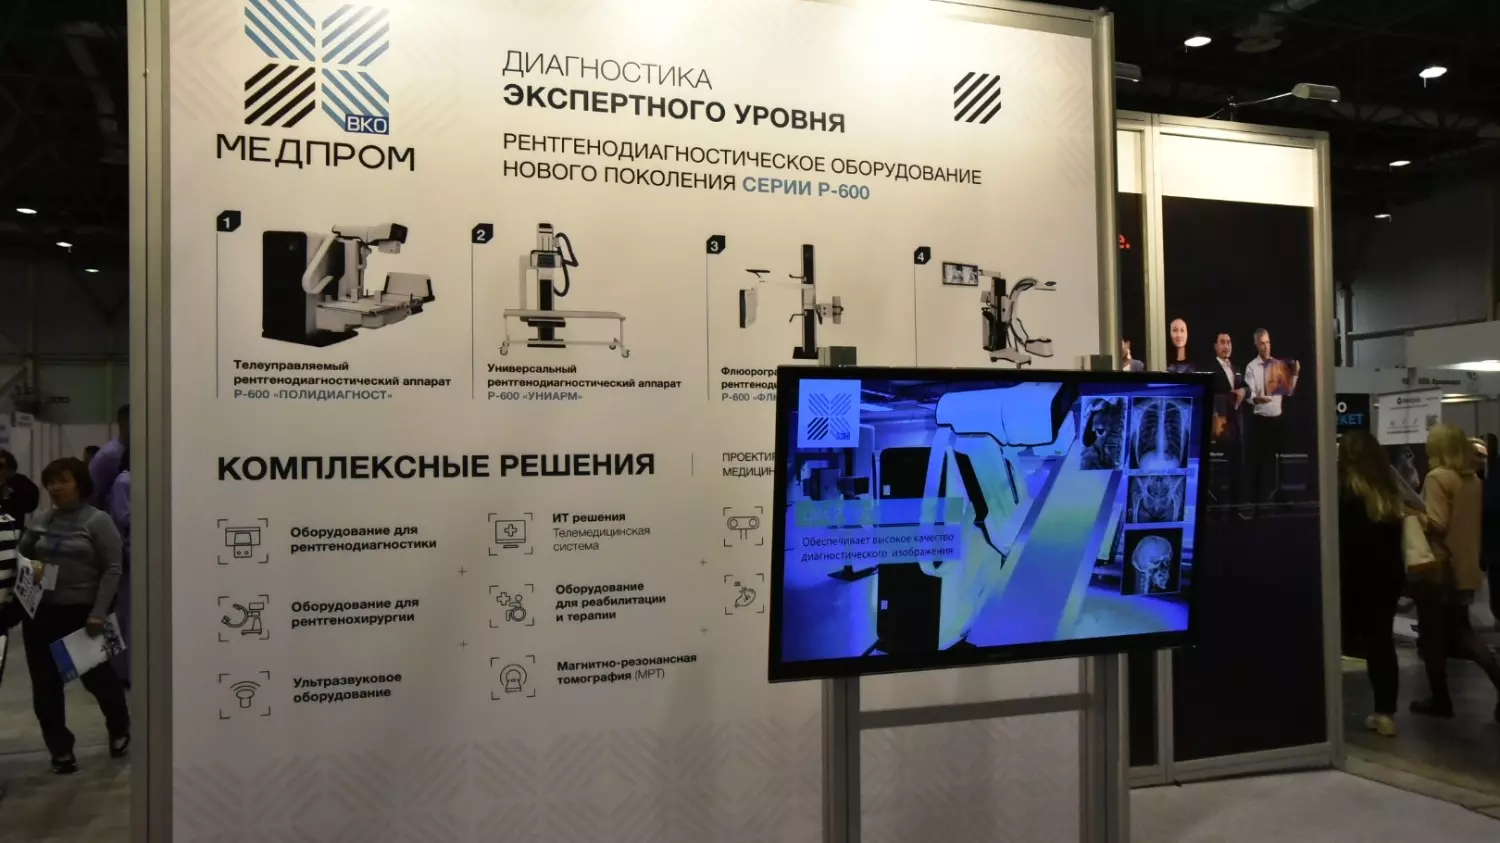 Губернатор Андрей Травников принял участие в открытии крупнейшей медицинской выставки-форума Сибири.